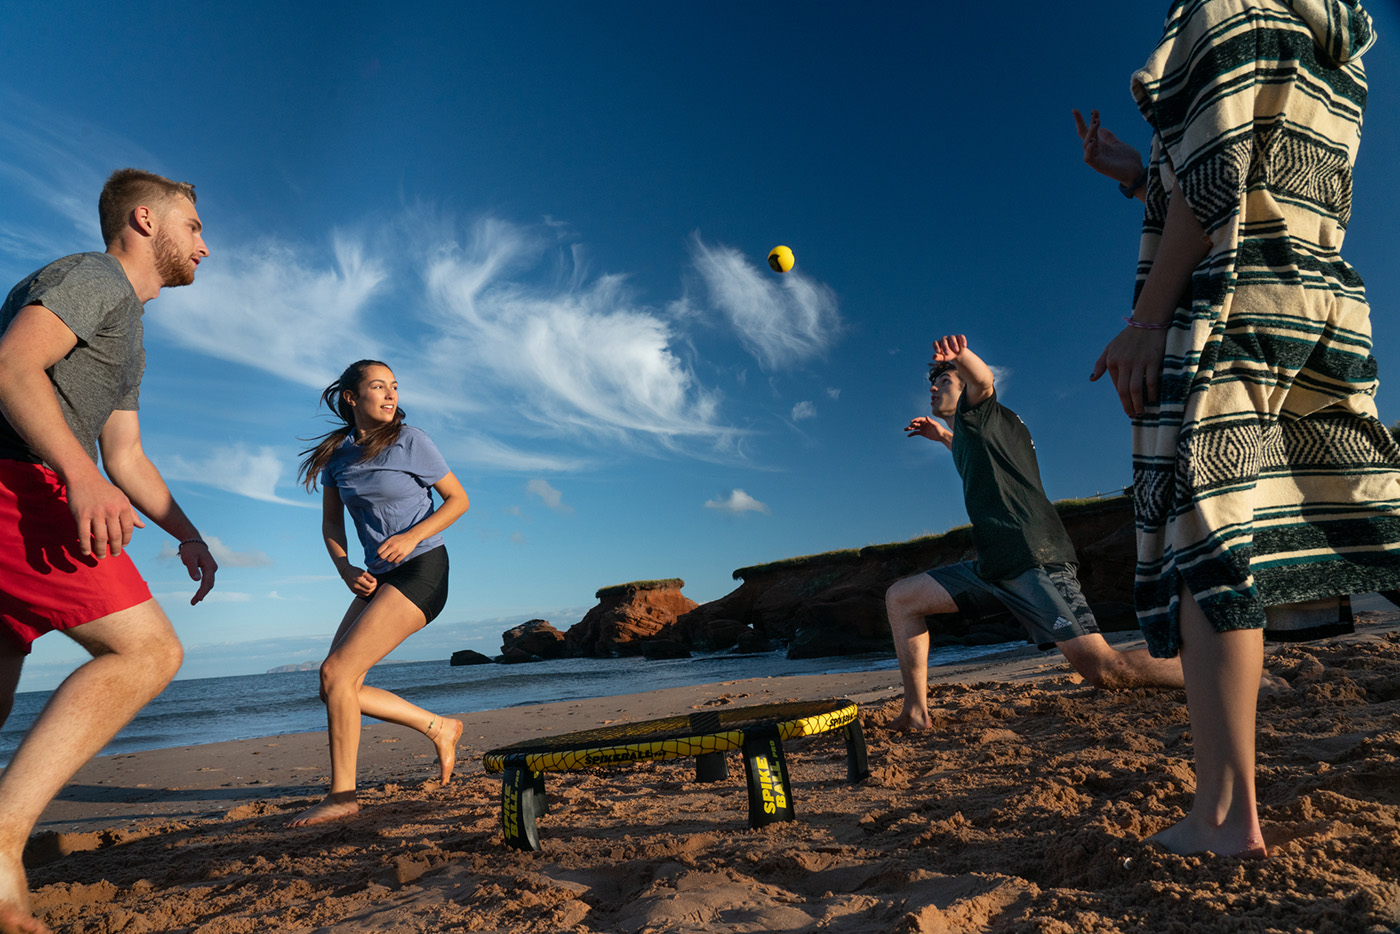 Des étudiants pratiquent le Spikeball, au bord de la plage, aux Îles-de-la-Madeleine.